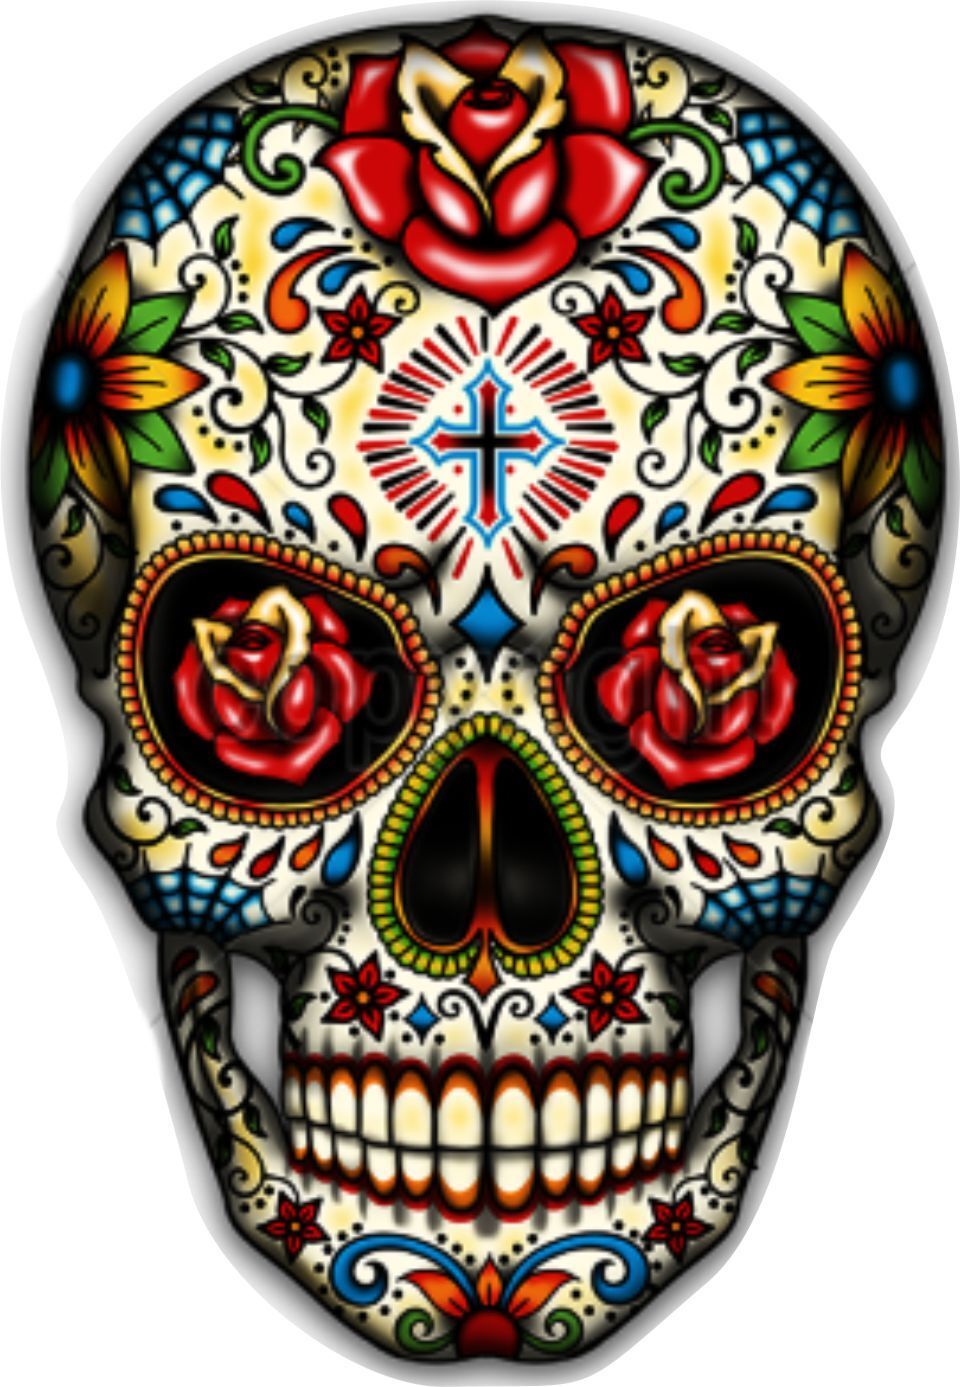 10cm Auto-Aufkleber Skull Totenkopf Mexican Spanish Day Dead D?a